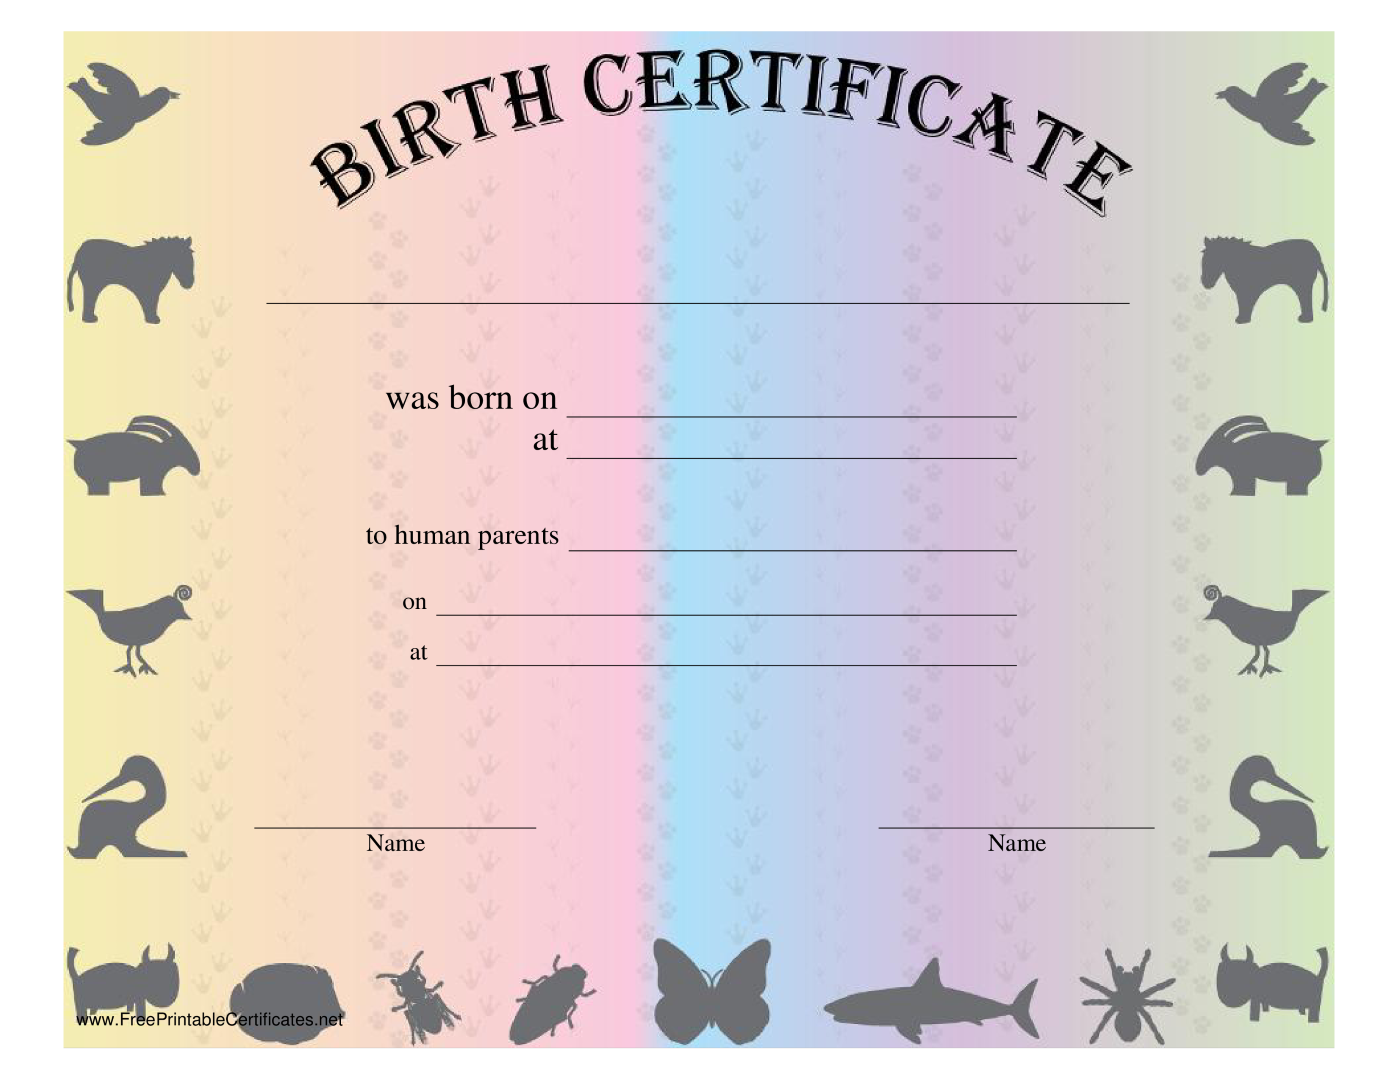 printable birth certificate for animals plantilla imagen principal